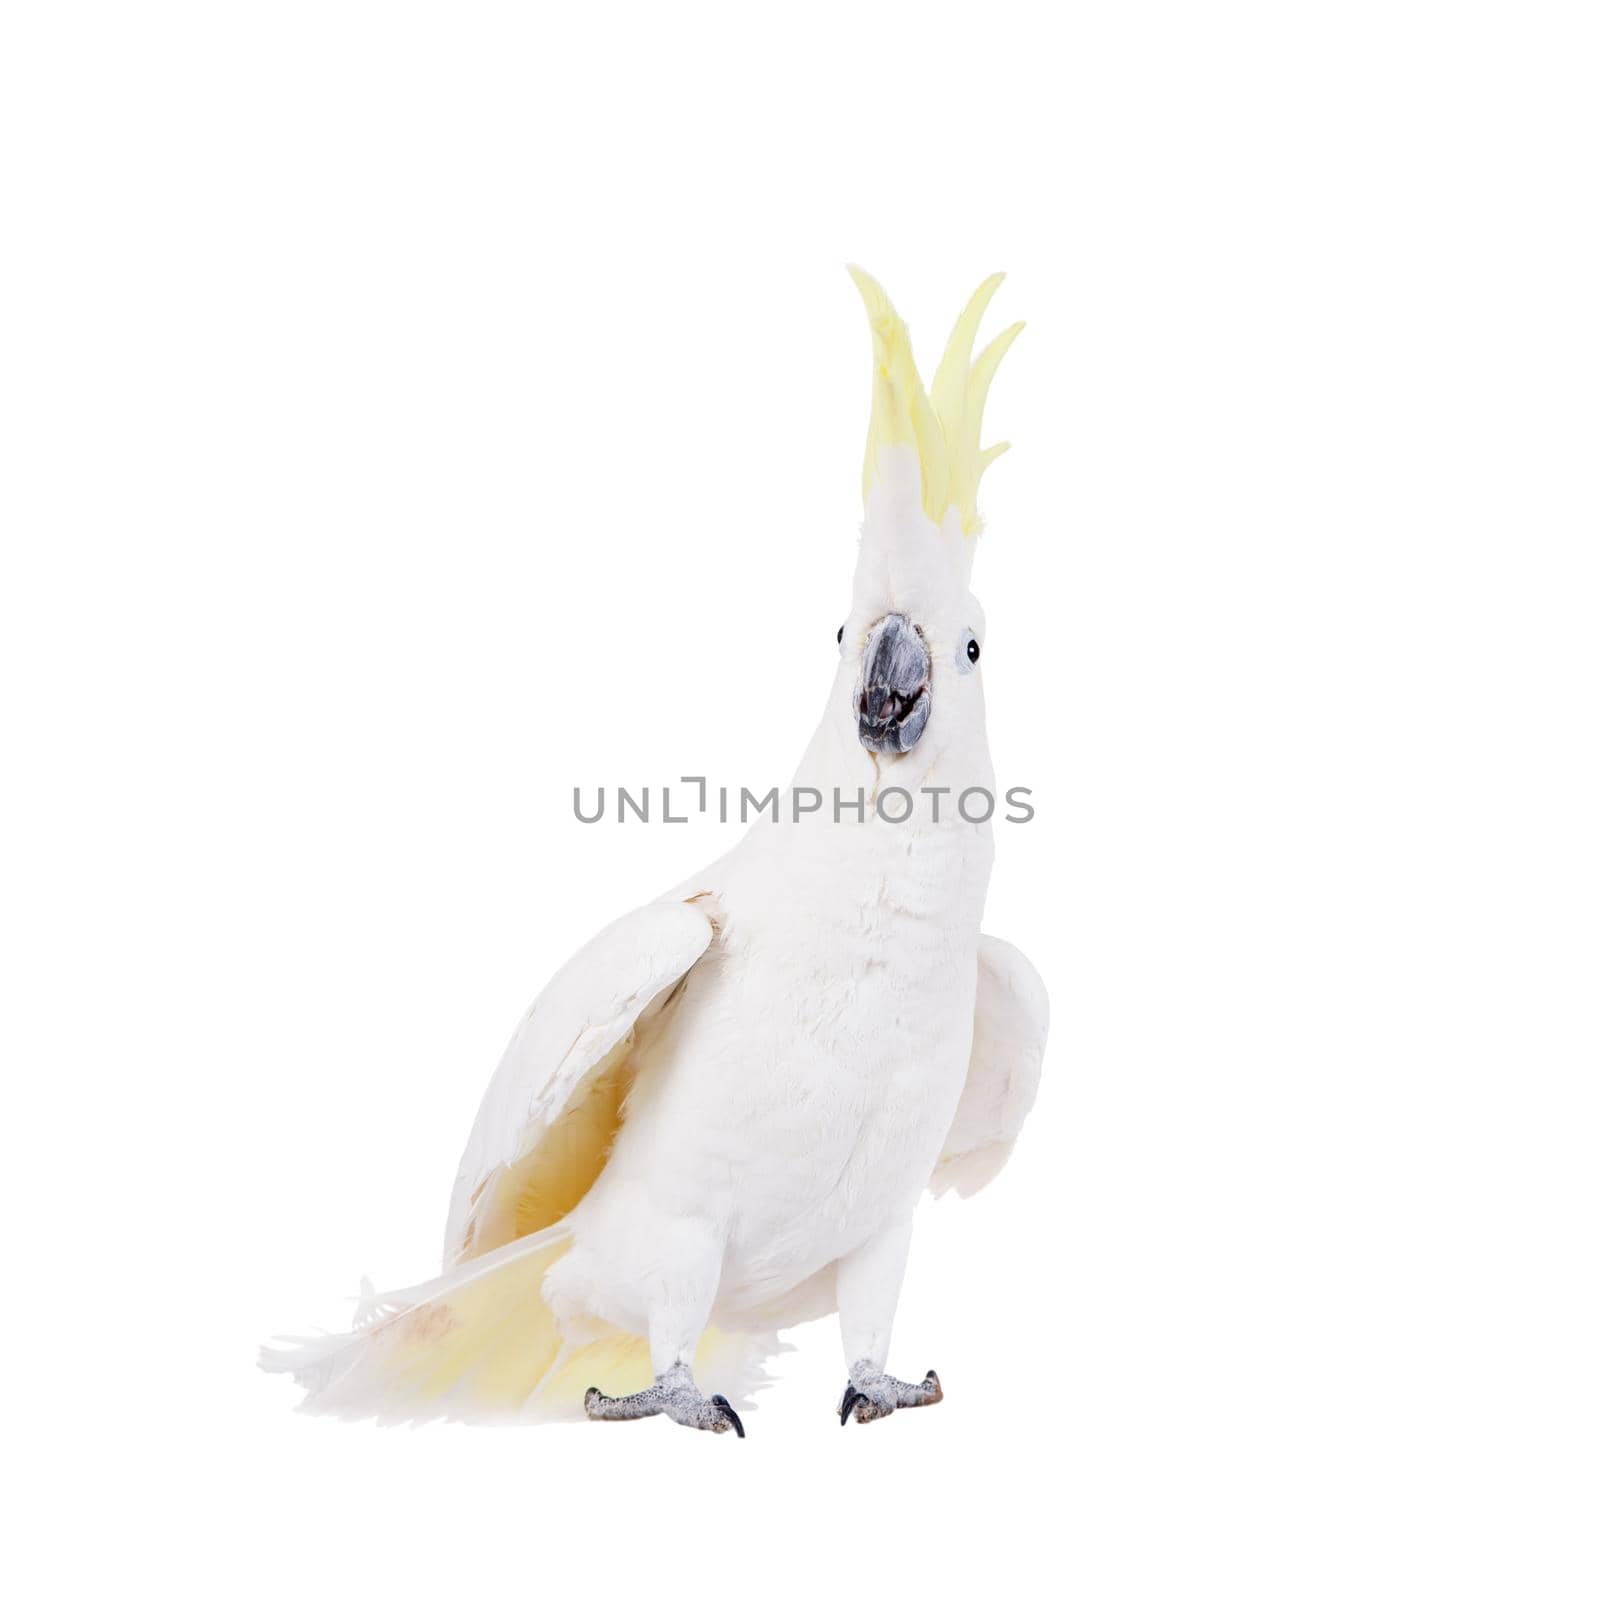 Sulphur-crested Cockatoo, Cacatua galerita, isolated over white background